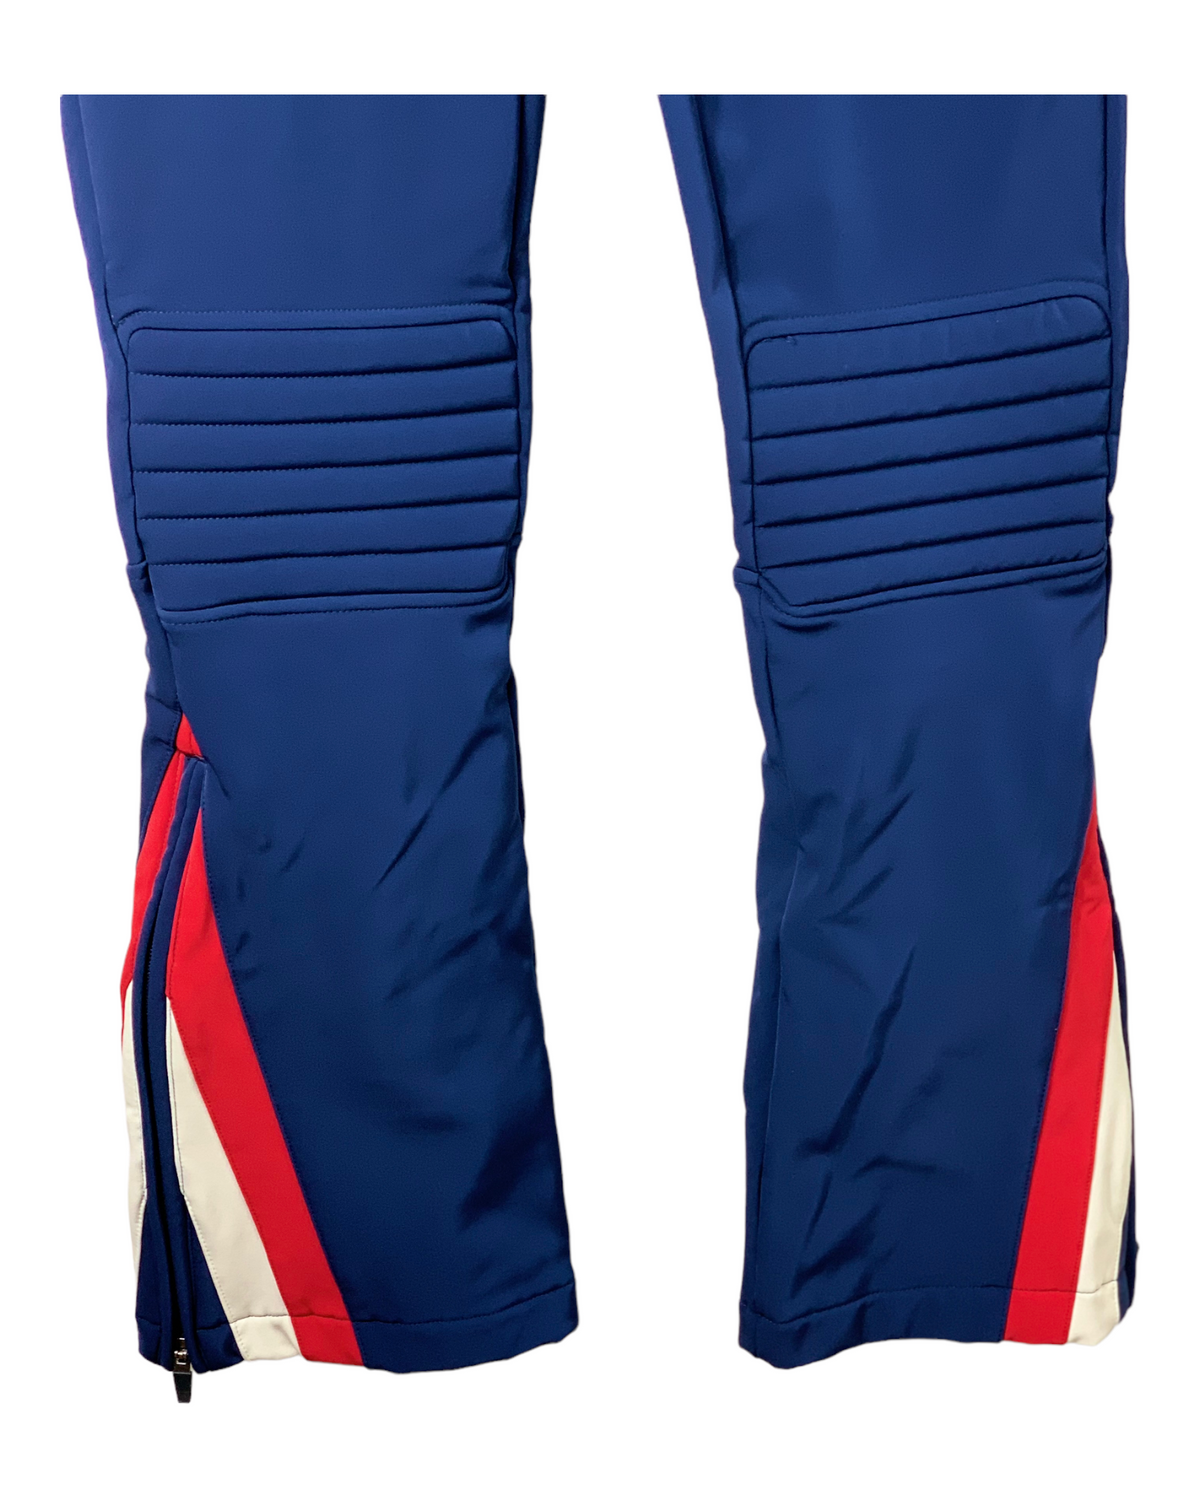 Pantalon ski Femme bleu PERFECT MOMENT taille S (36/38)